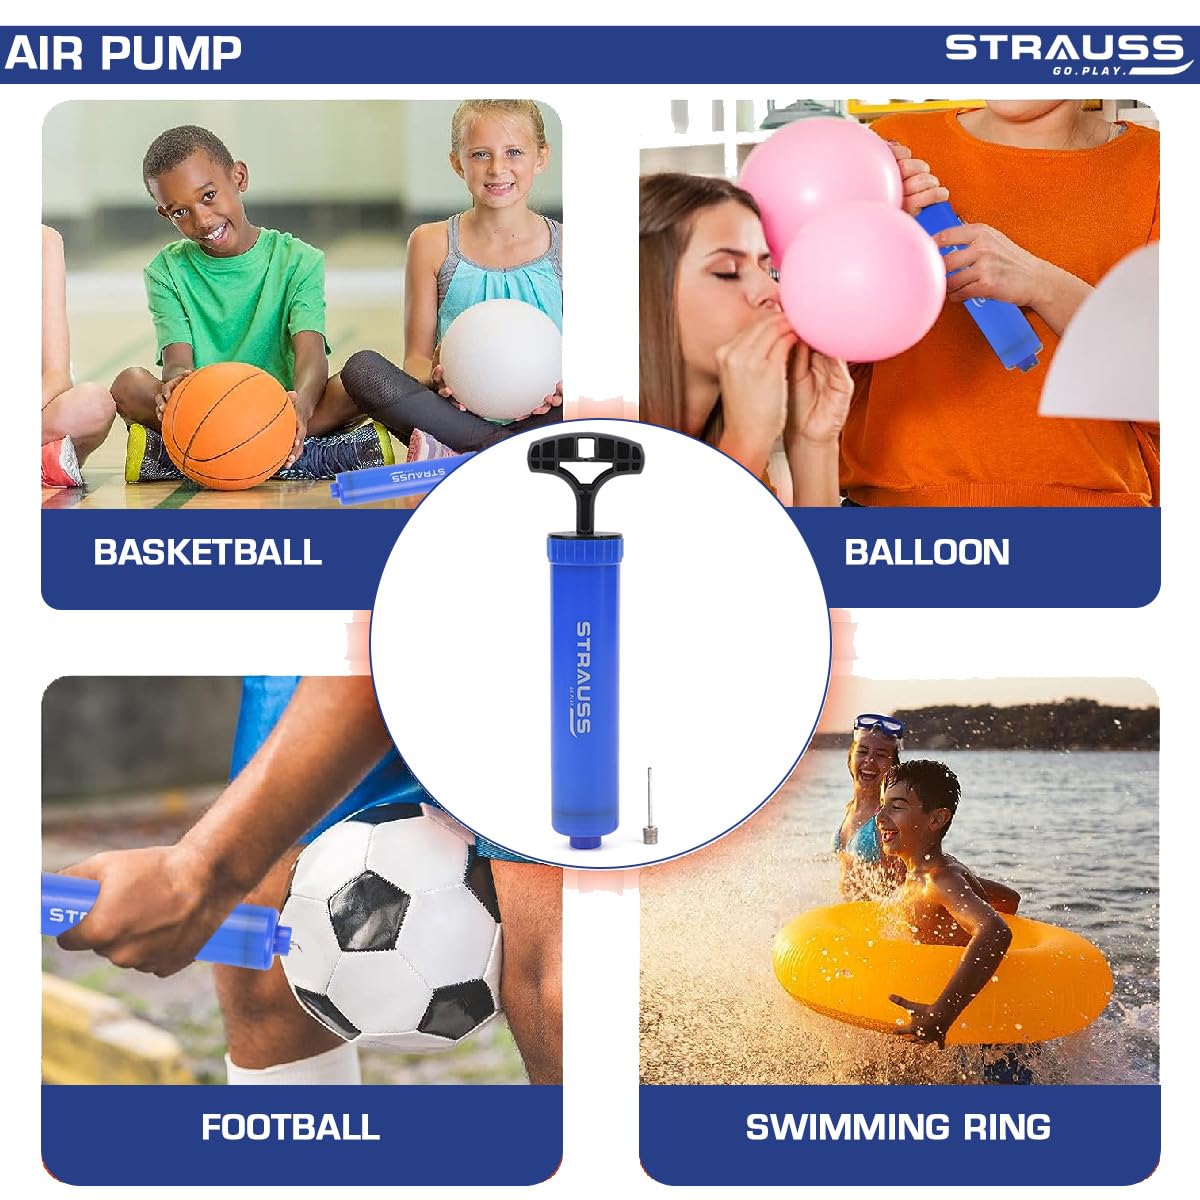 Ball Pump for Sports Balls - 5 Needles - Basketball Pump, Soccer Ball Pump  - Air Pump for Balls, Volleyball, Football Accessories Equipment - Hand